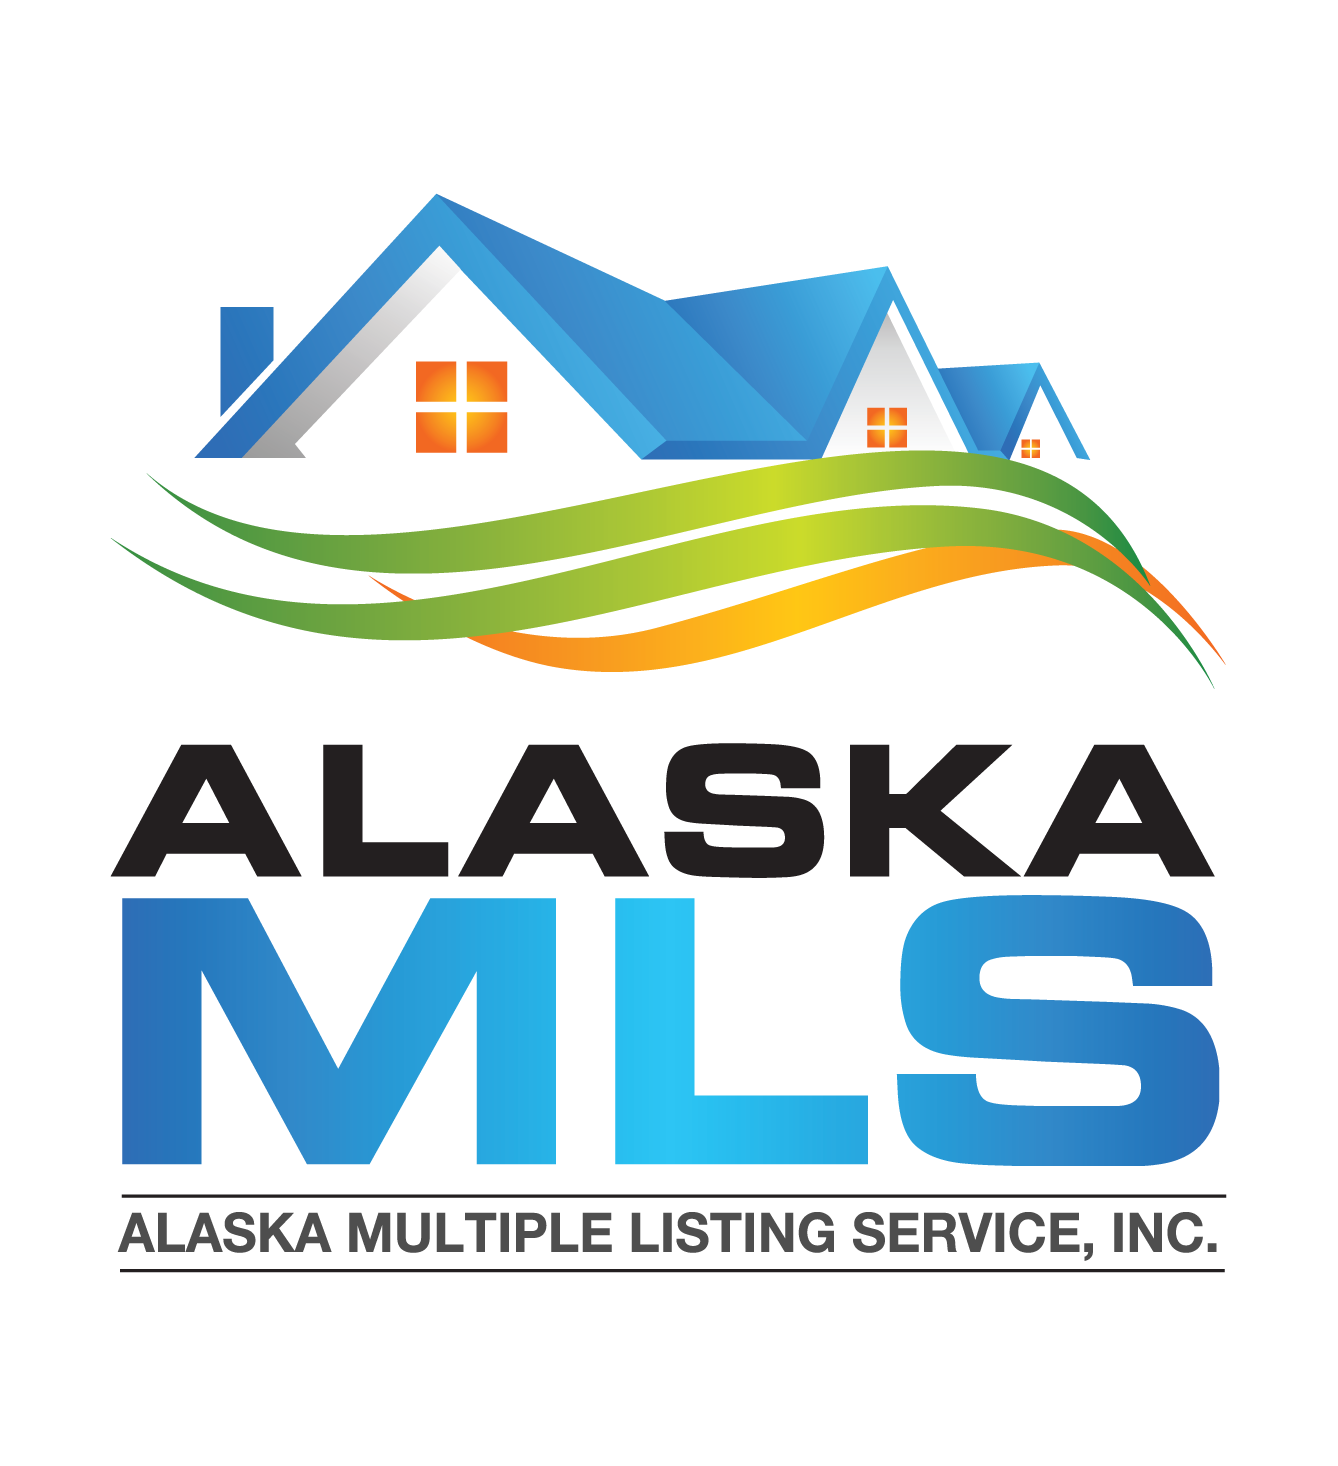 Alaska MLS